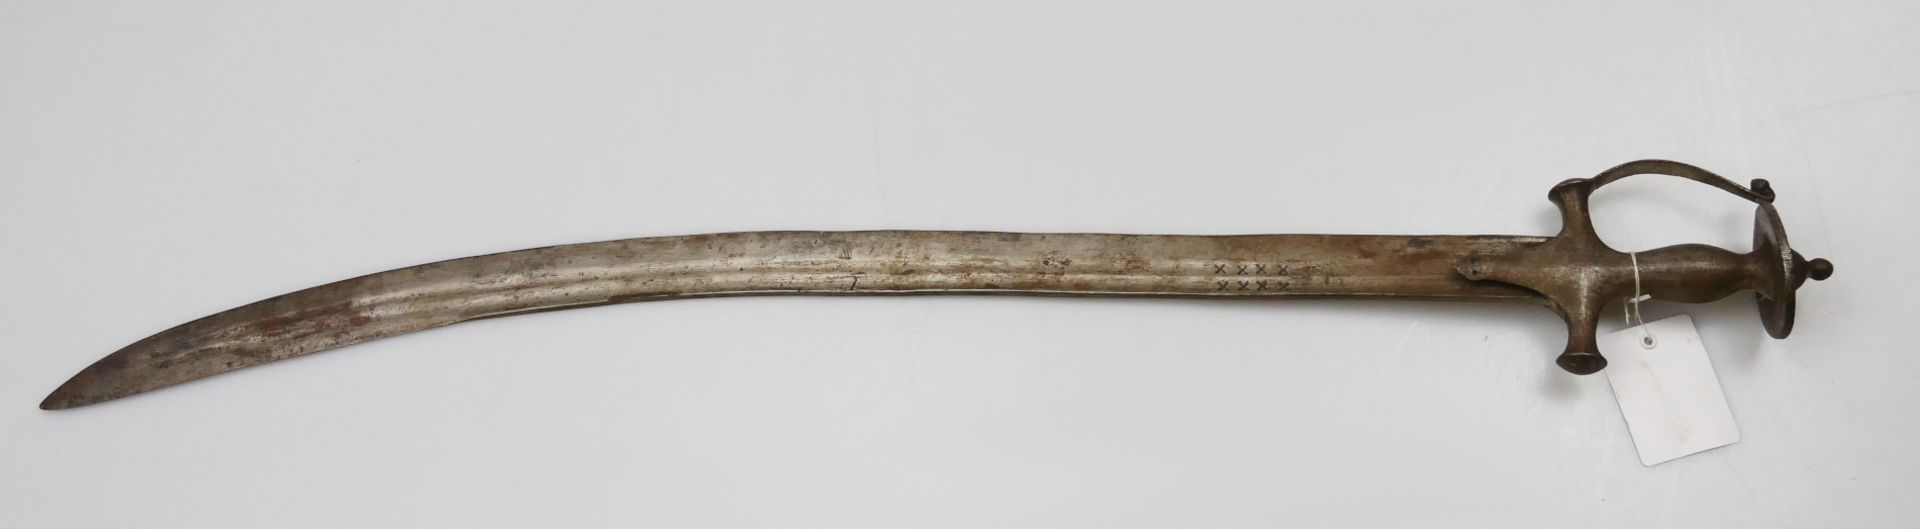 1 Talwar wohl Indien Metallklinge und -griff, ca. L 91cm, z.T. besch., Asp. - Bild 2 aus 3